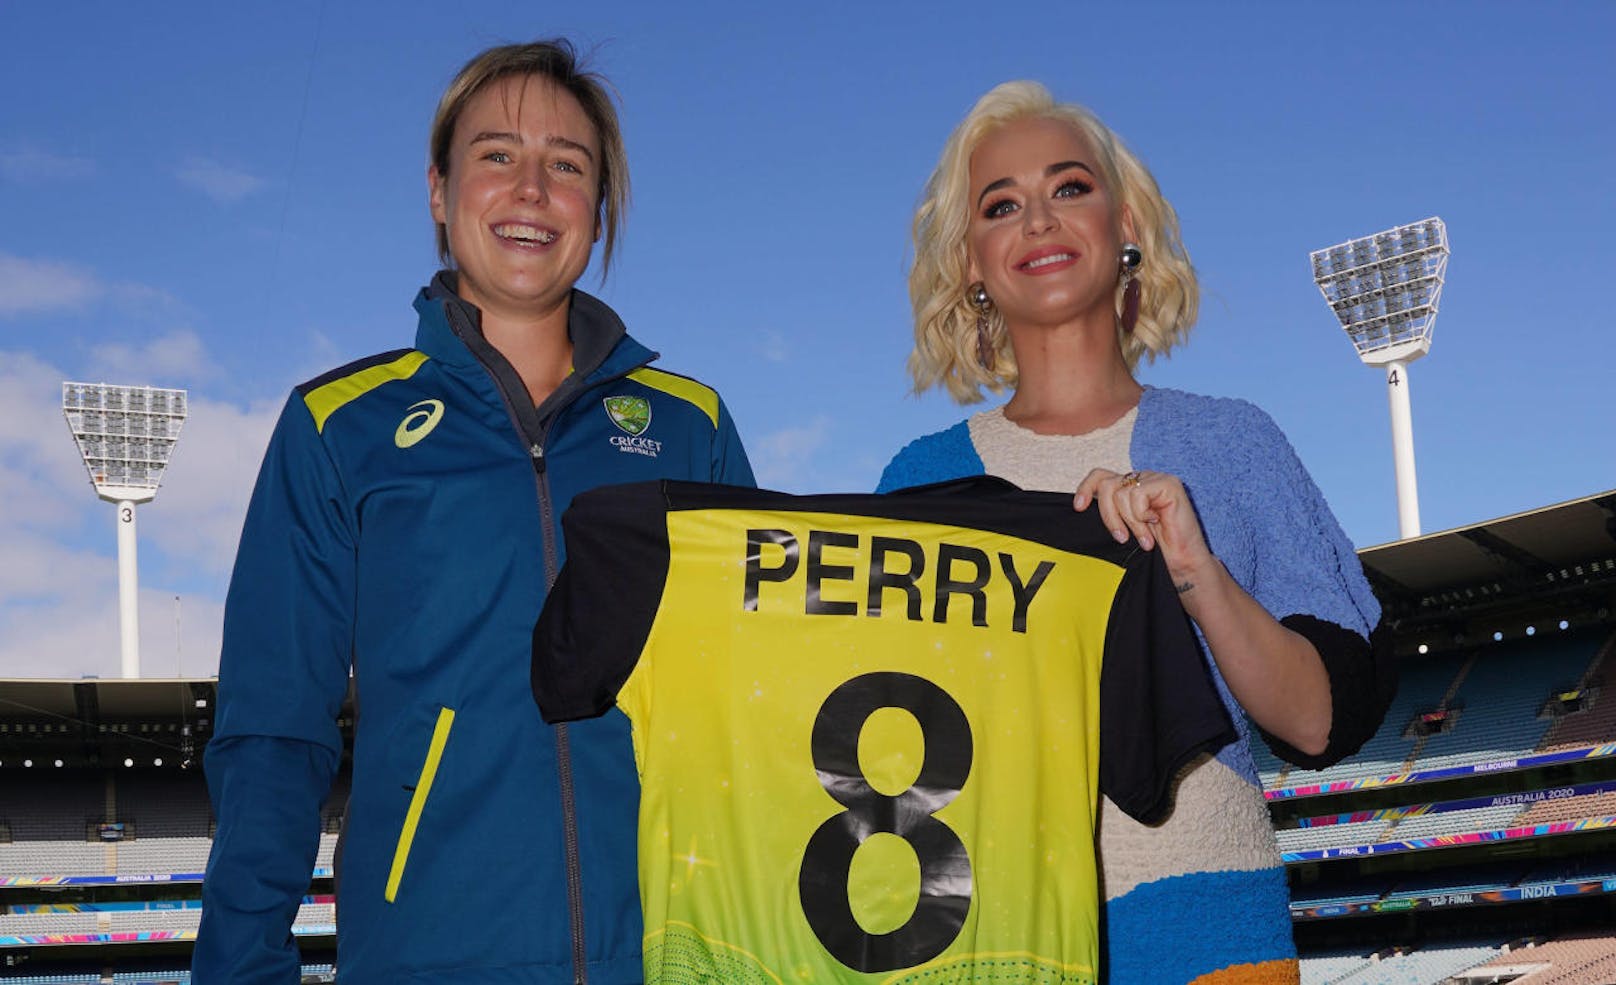 Ellyse Perry vom australischen Cricket-Frauenteam überreichte Katy stolz ein Dress.